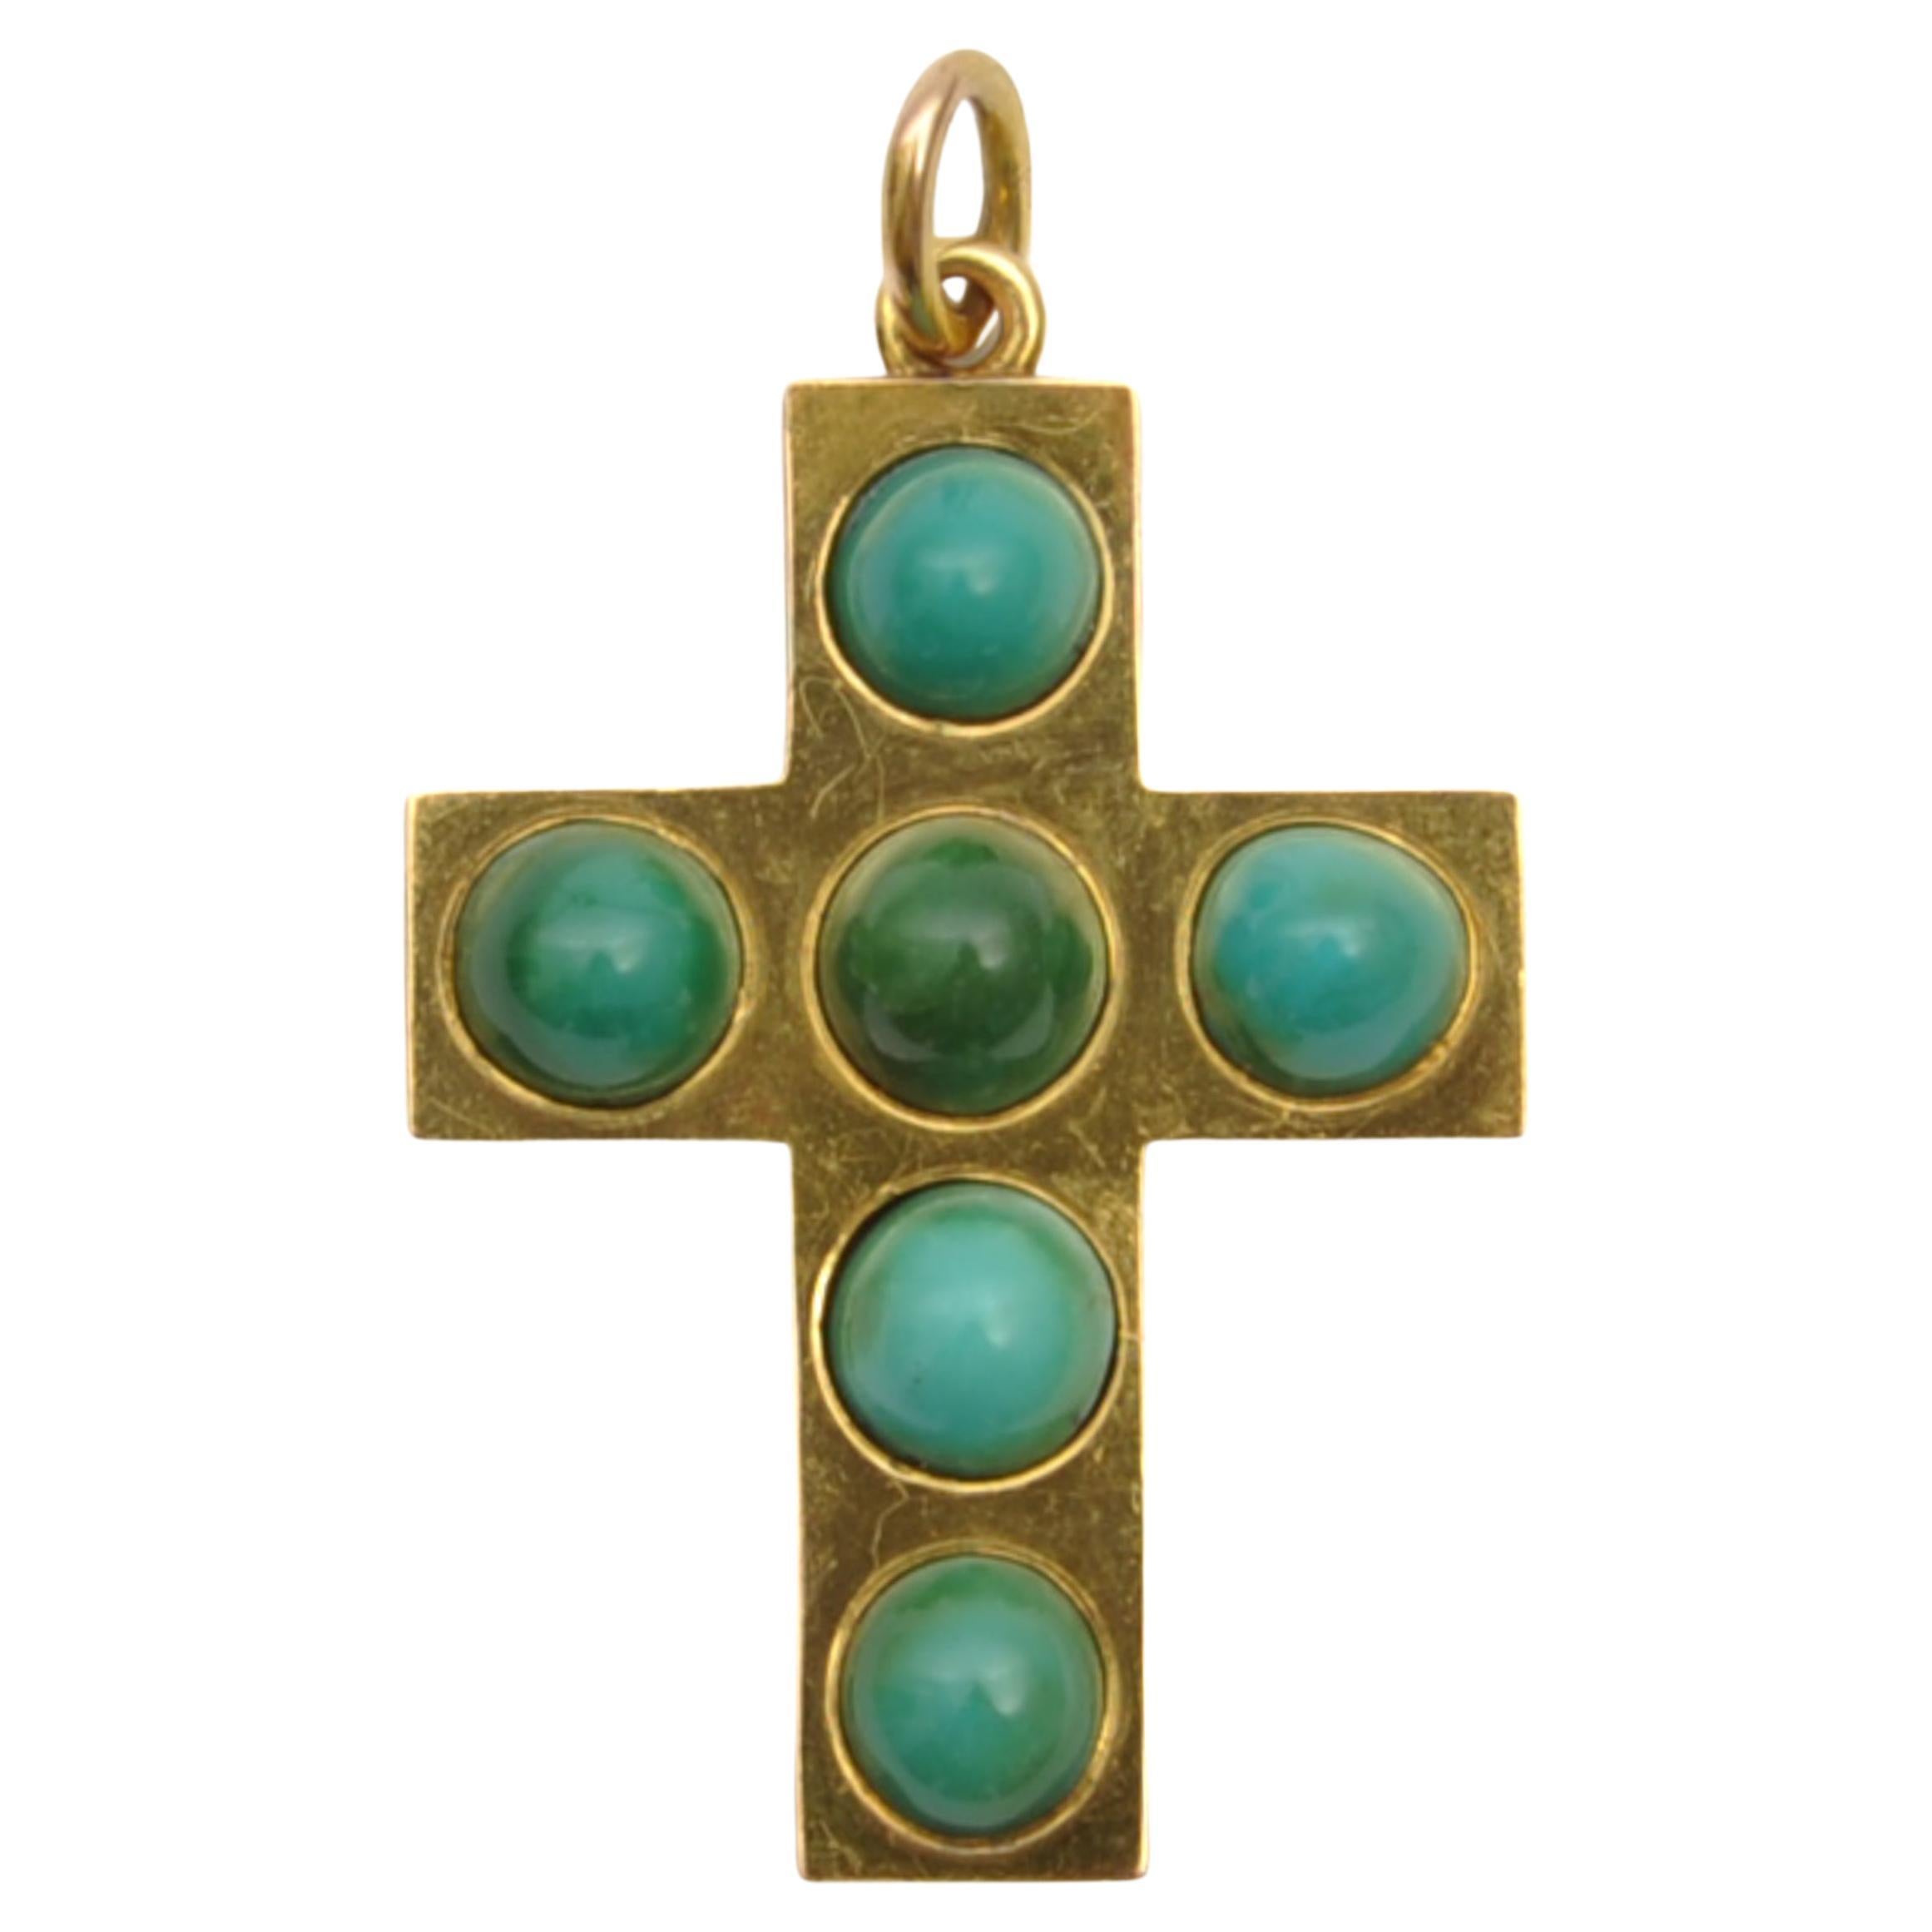 Pendentif croix victorien ancien en or 14 carats et turquoise